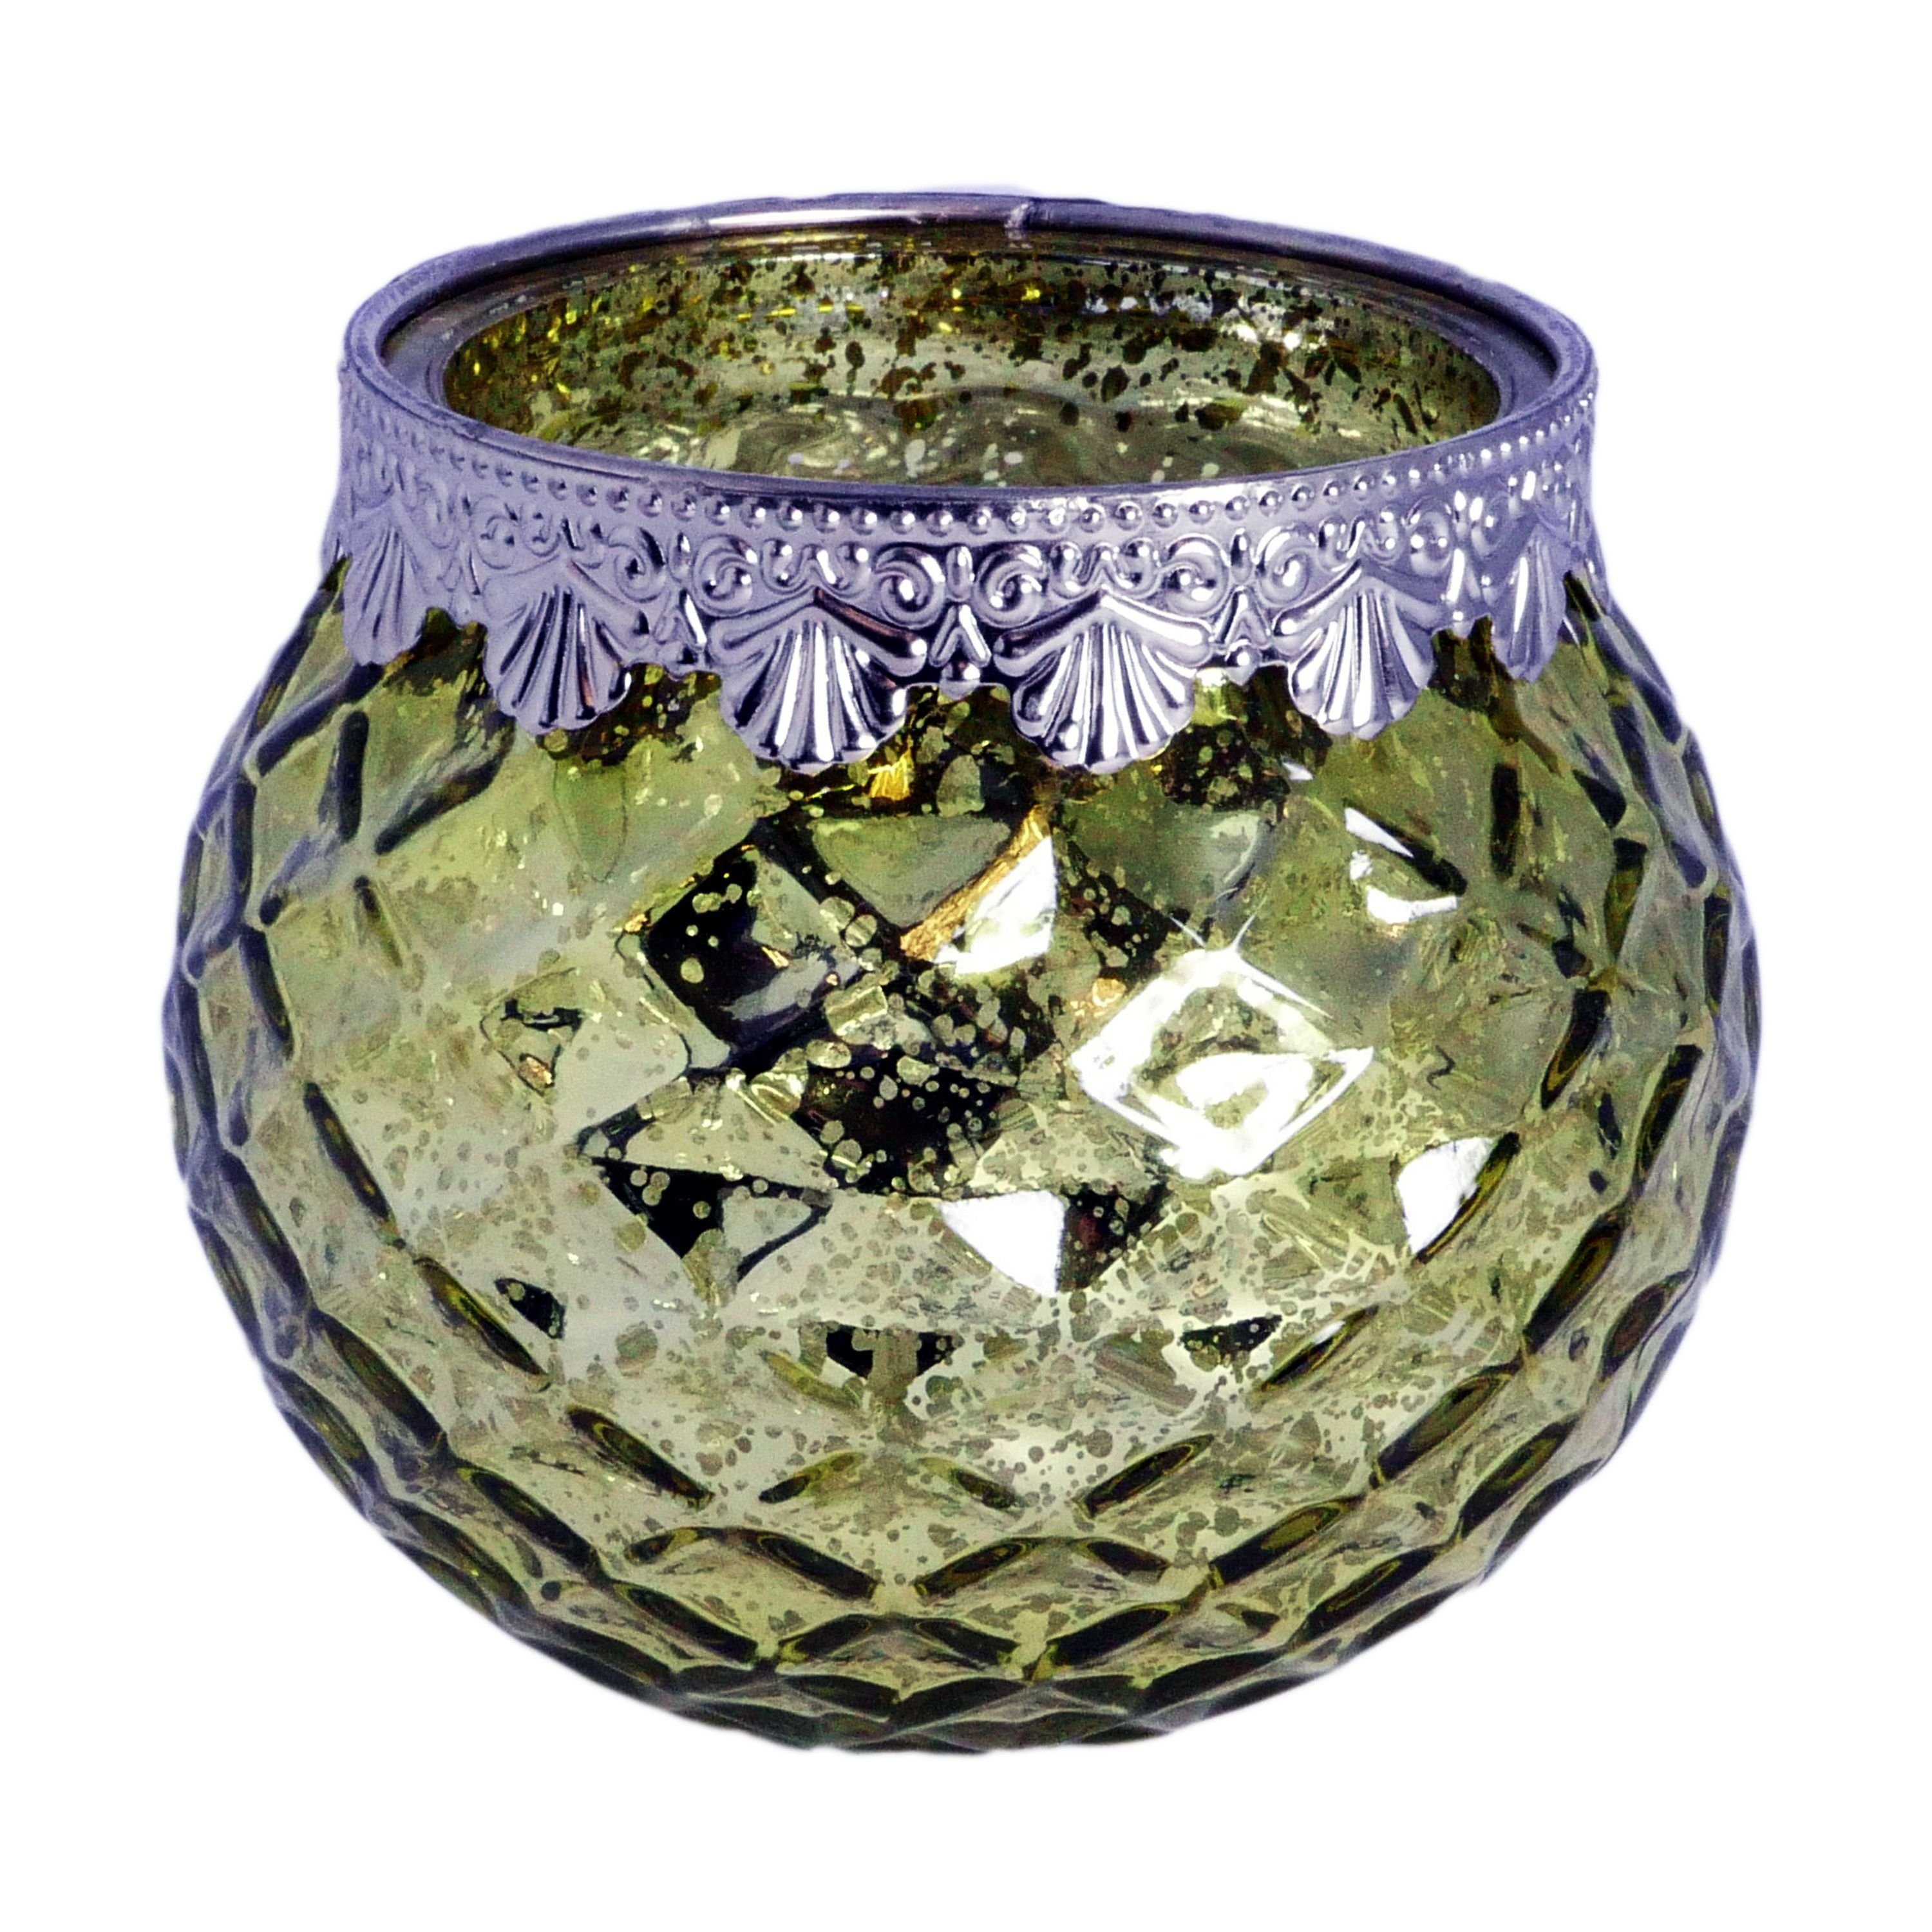 B&S Windlicht Teelichtglas grün Zierrand Metall